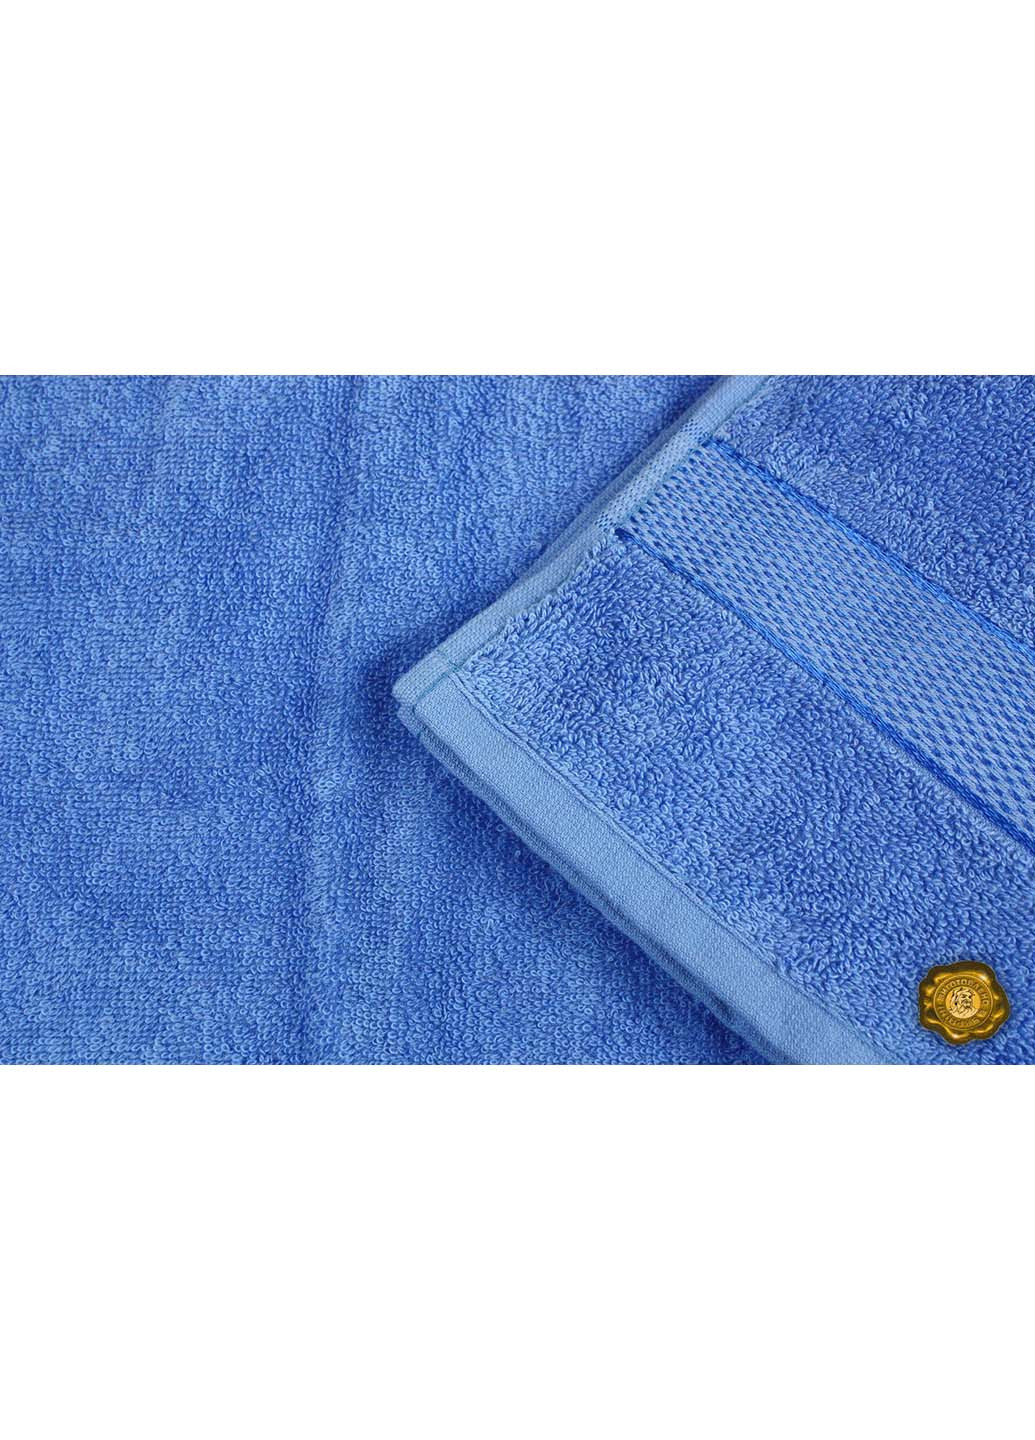 Еней-Плюс полотенце махровое бс0008 50х90 синий производство - Украина